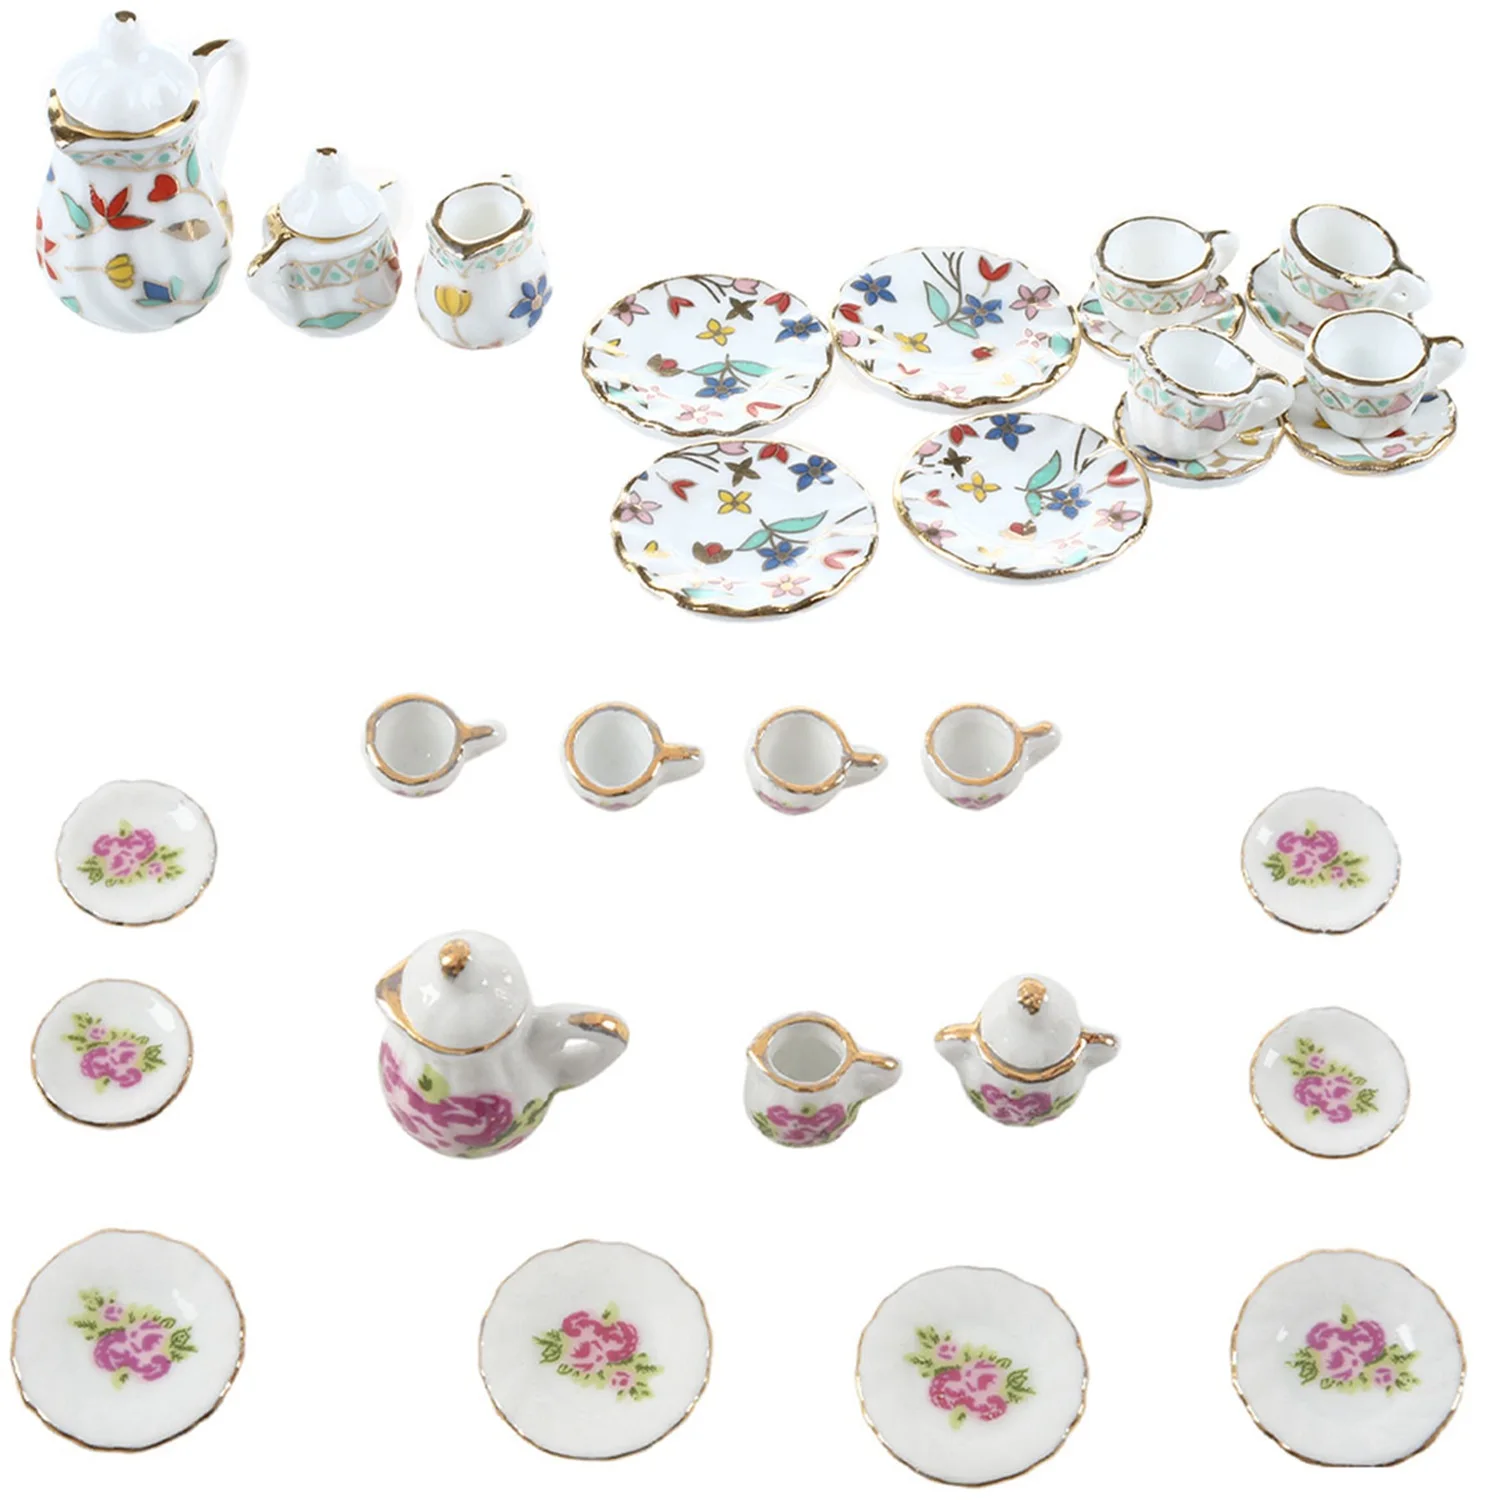 2 комплекта миниатюрной посуды, фарфоровый чайный сервиз - красочный цветочный принт и китайский Изображение 1